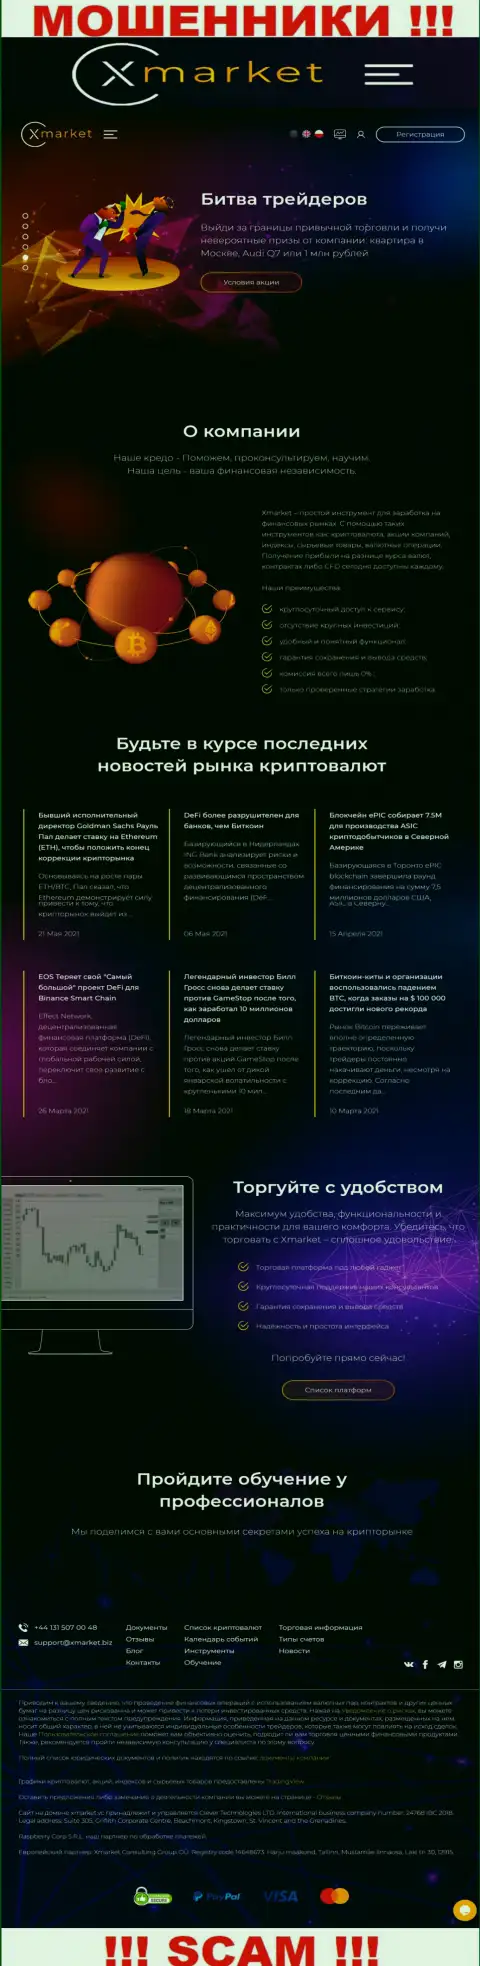 Официальный информационный портал internet-ворюг и аферистов компании Х Маркет